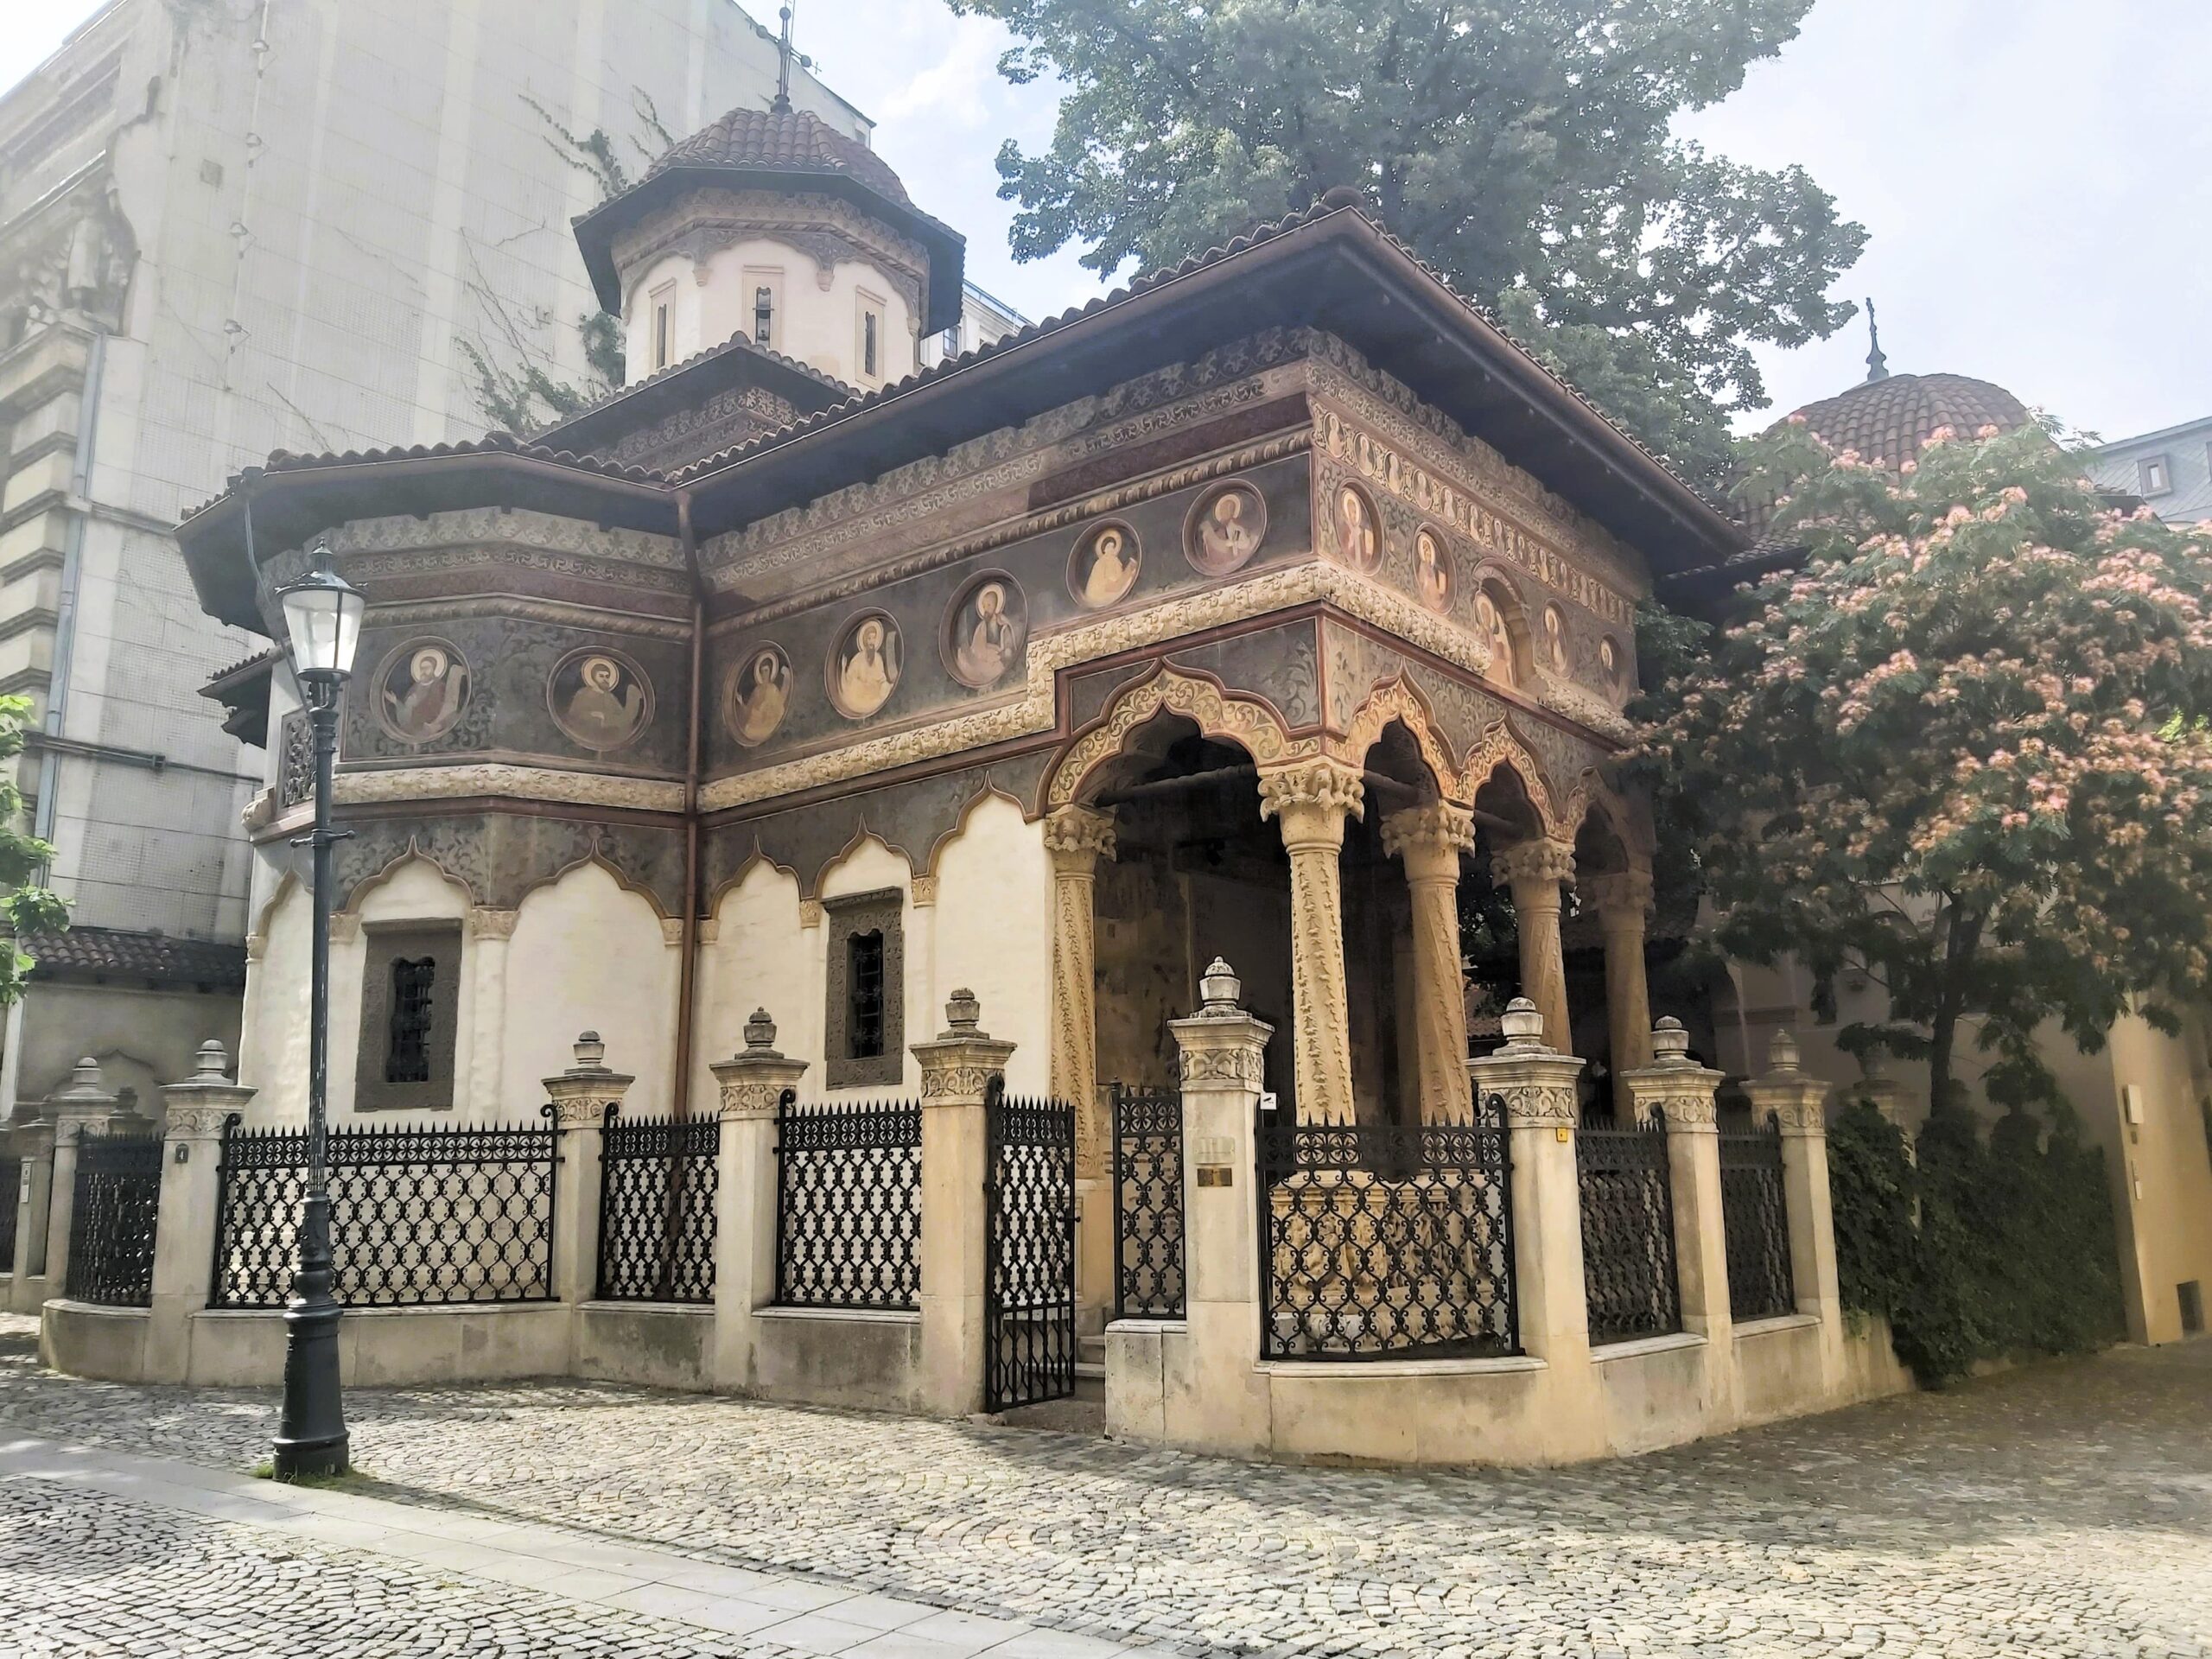 The exquisitely patterned Mănăstirea Stavropoleos in București, Romania